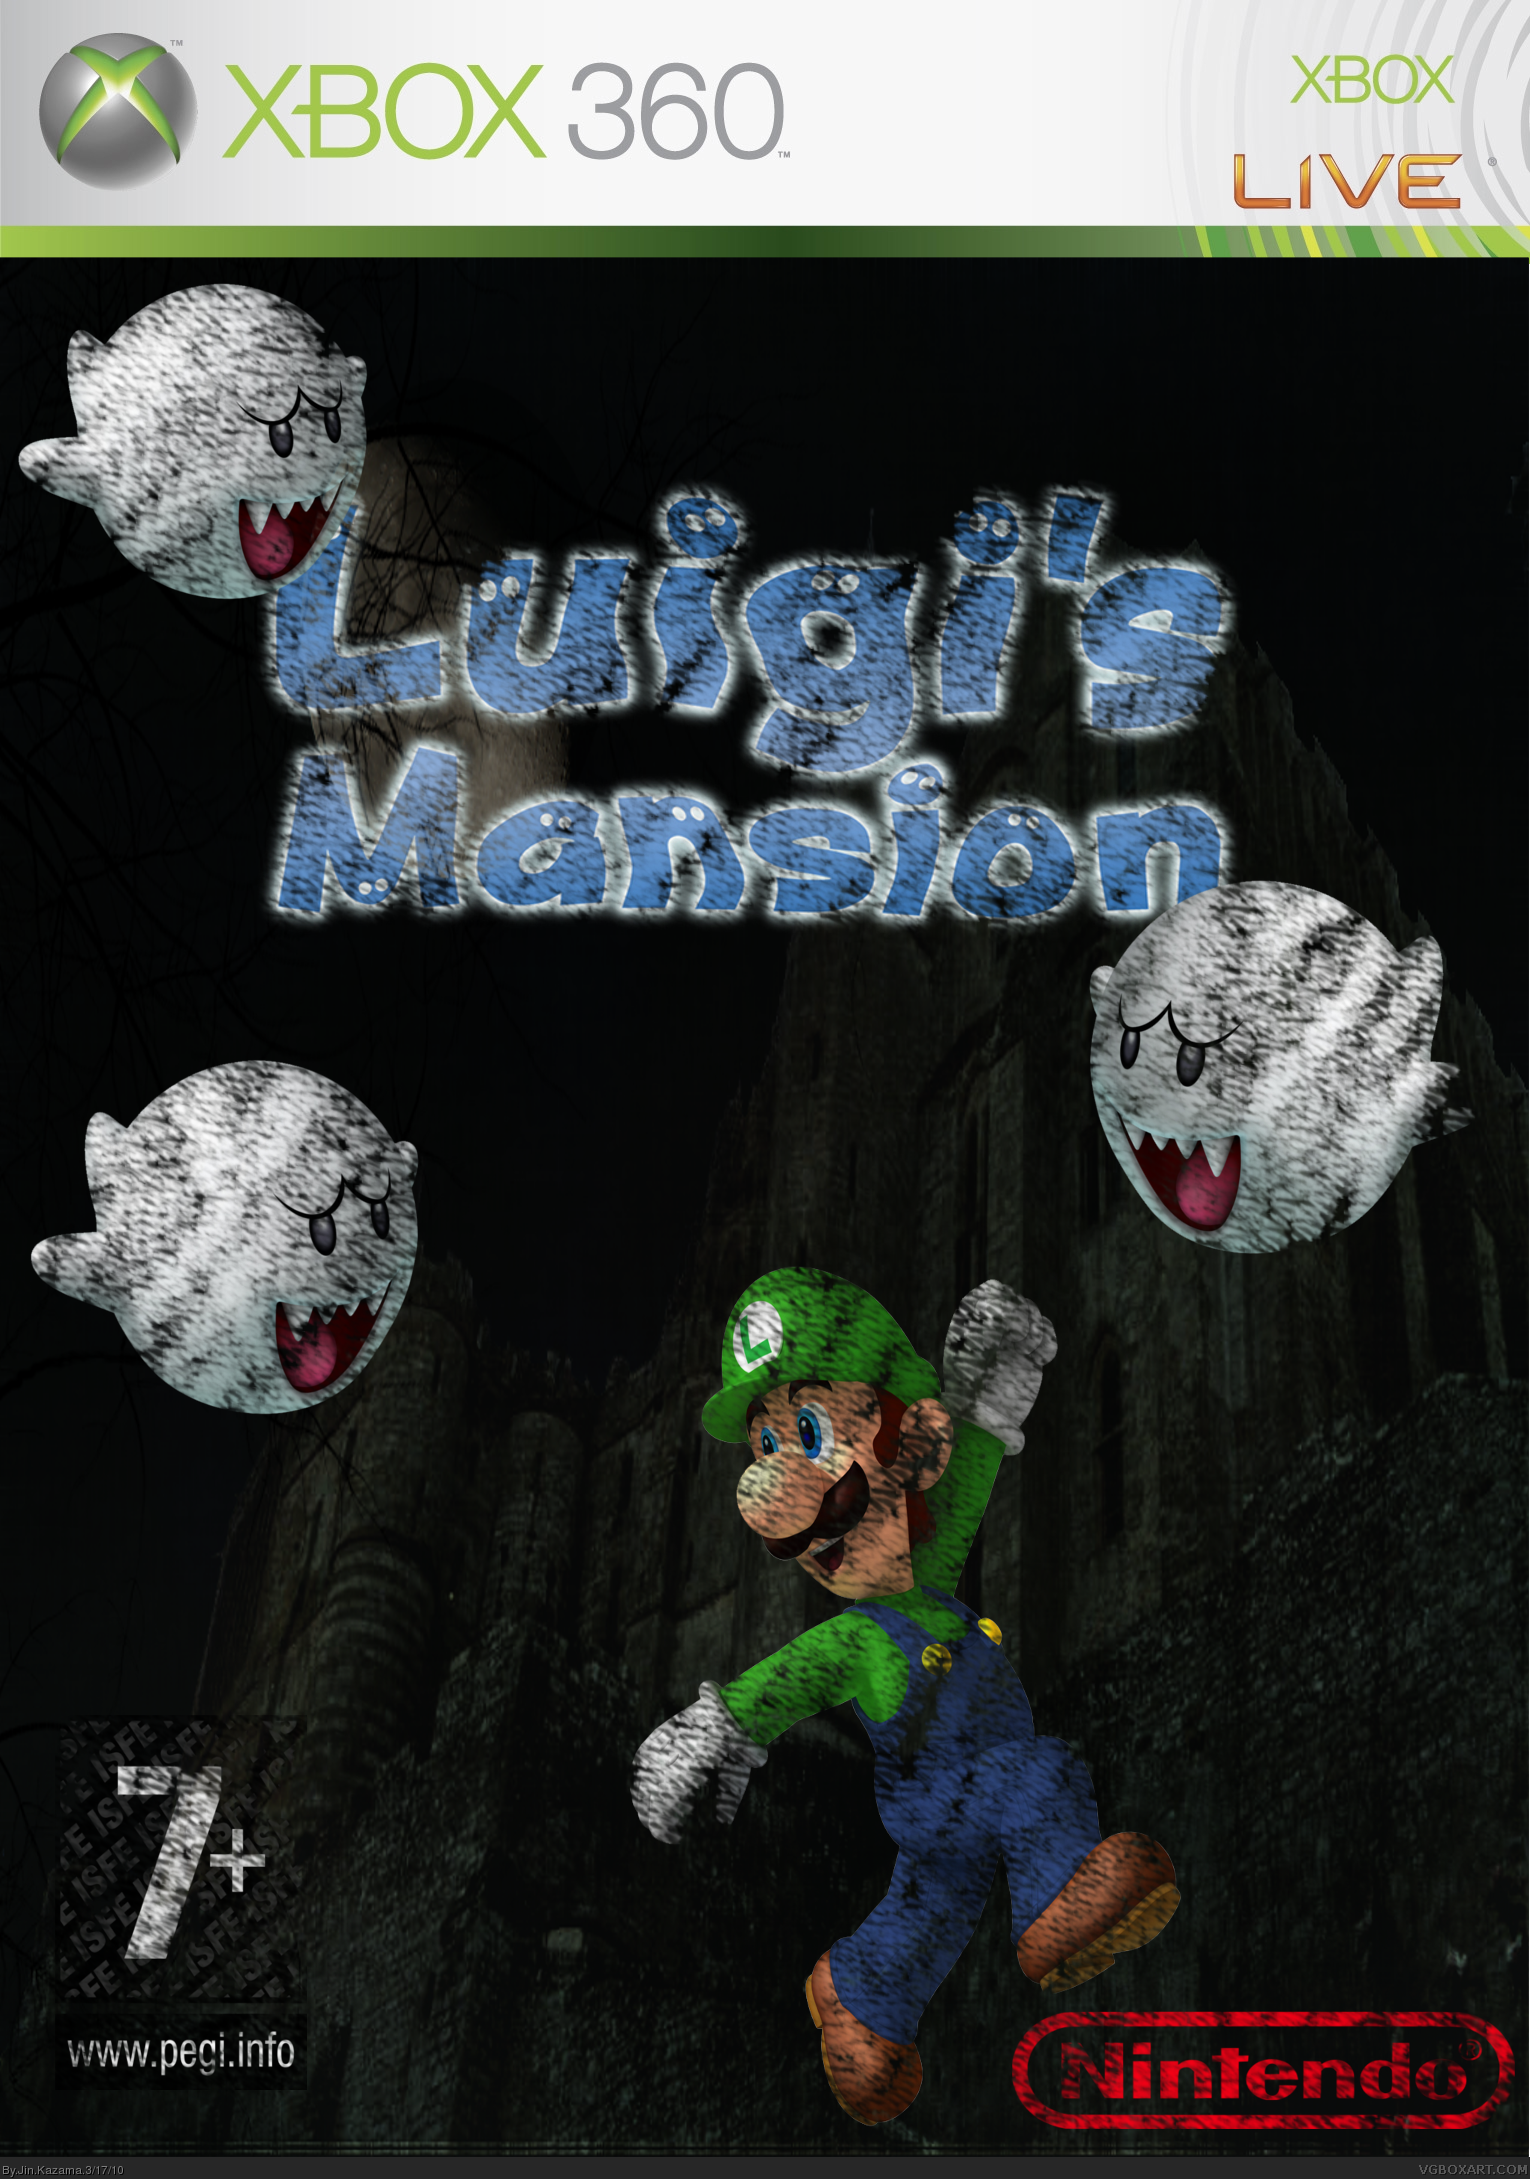 Luigi's Mansion XBOX 360 box cover